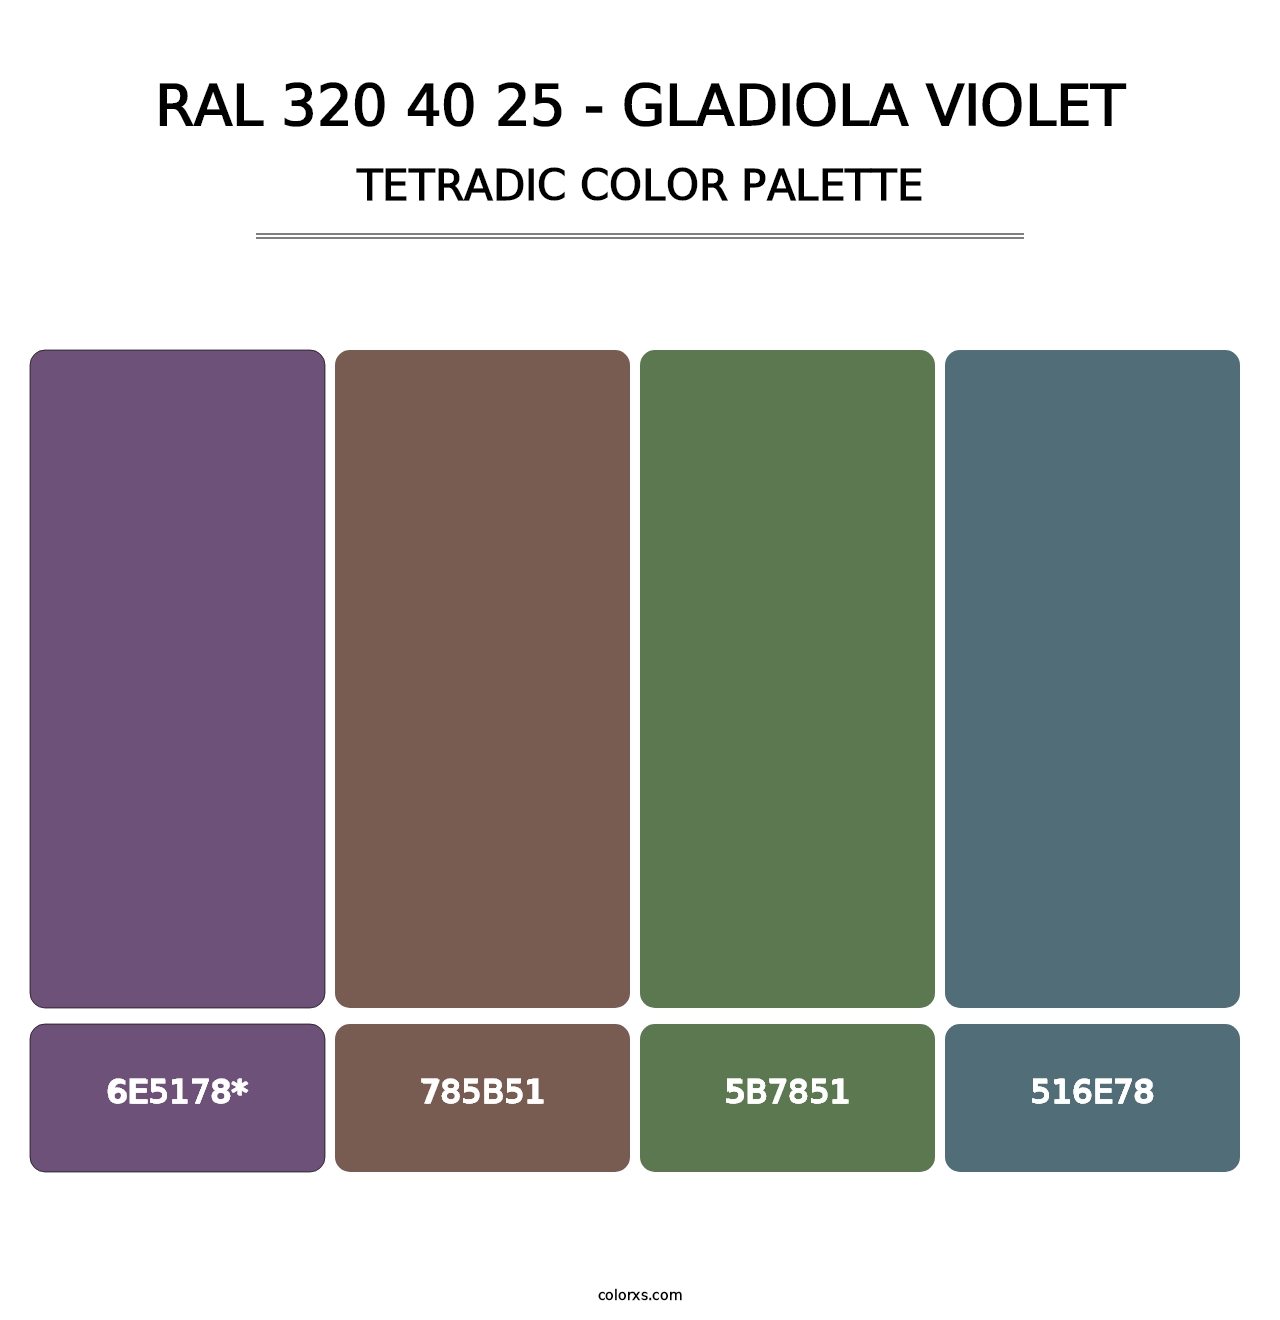 RAL 320 40 25 - Gladiola Violet - Tetradic Color Palette